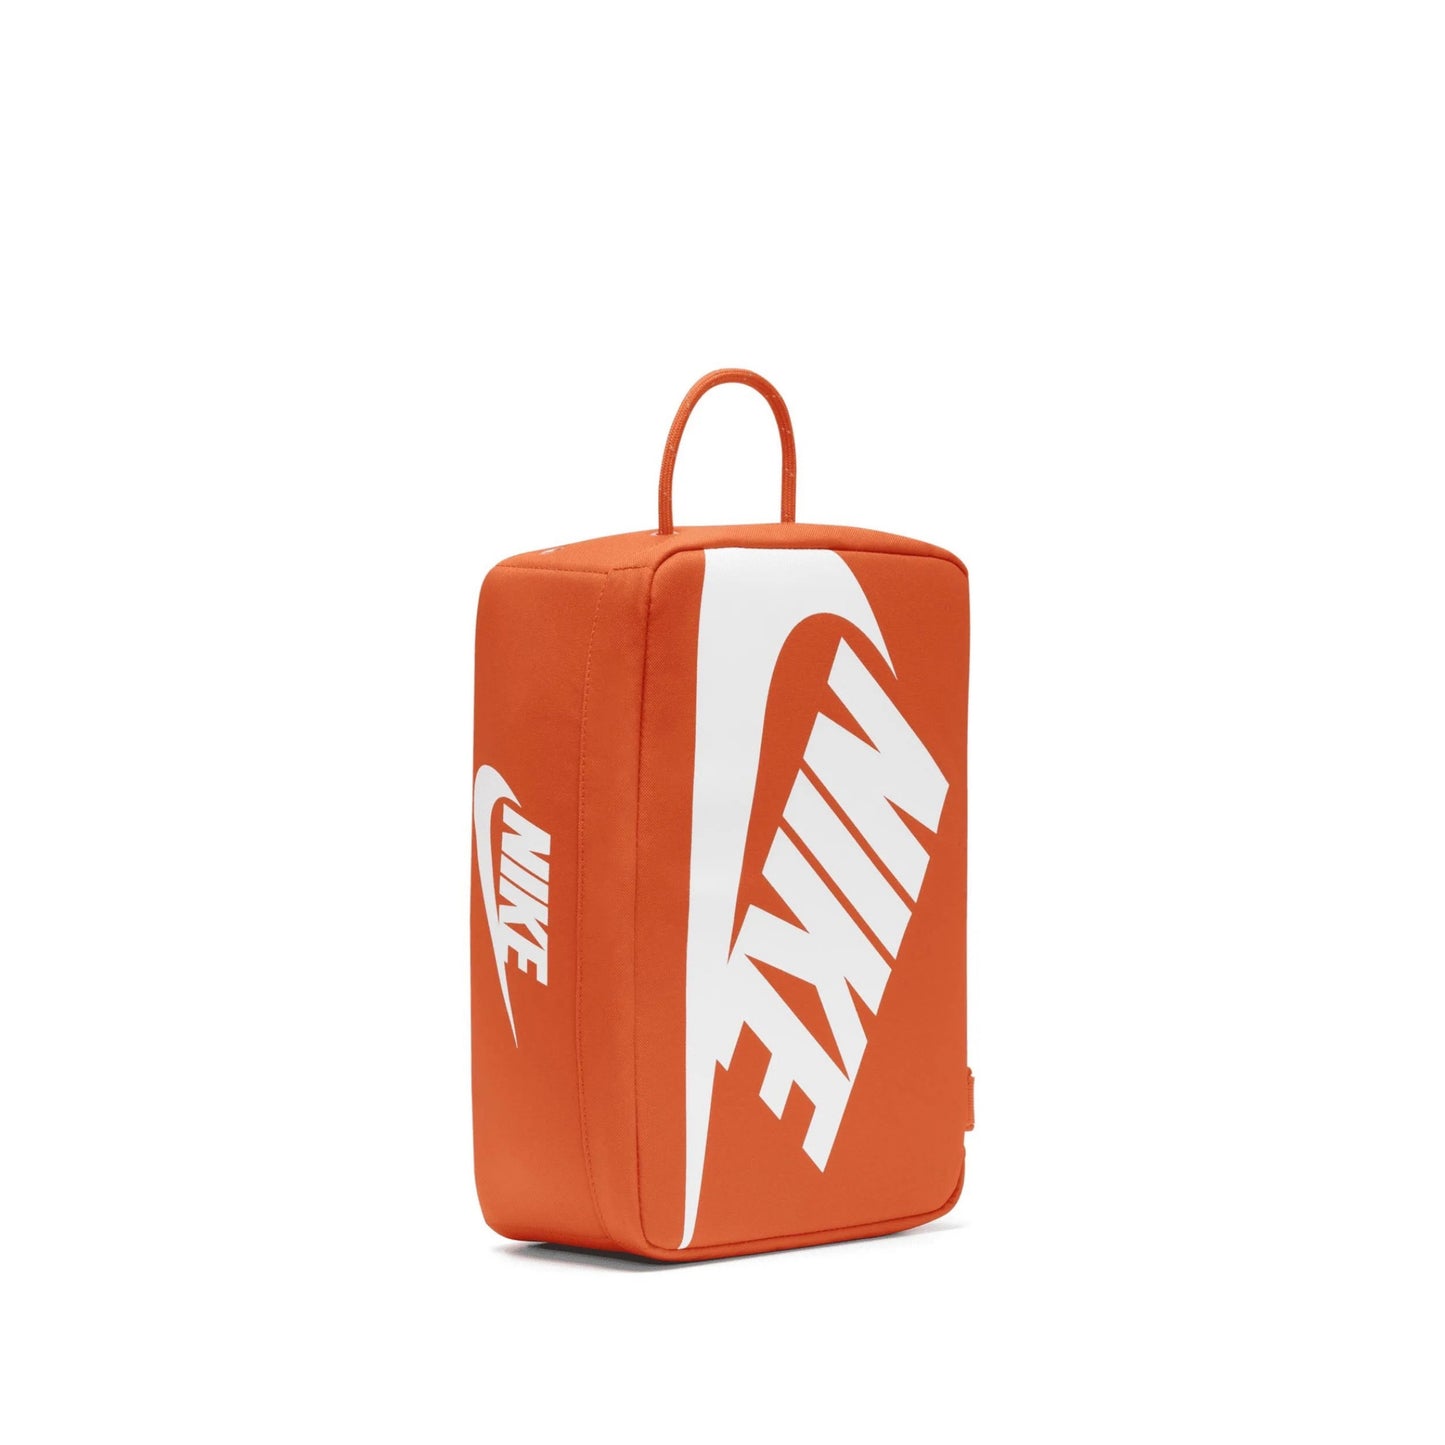 Nike Shoe Box Bag - Orange